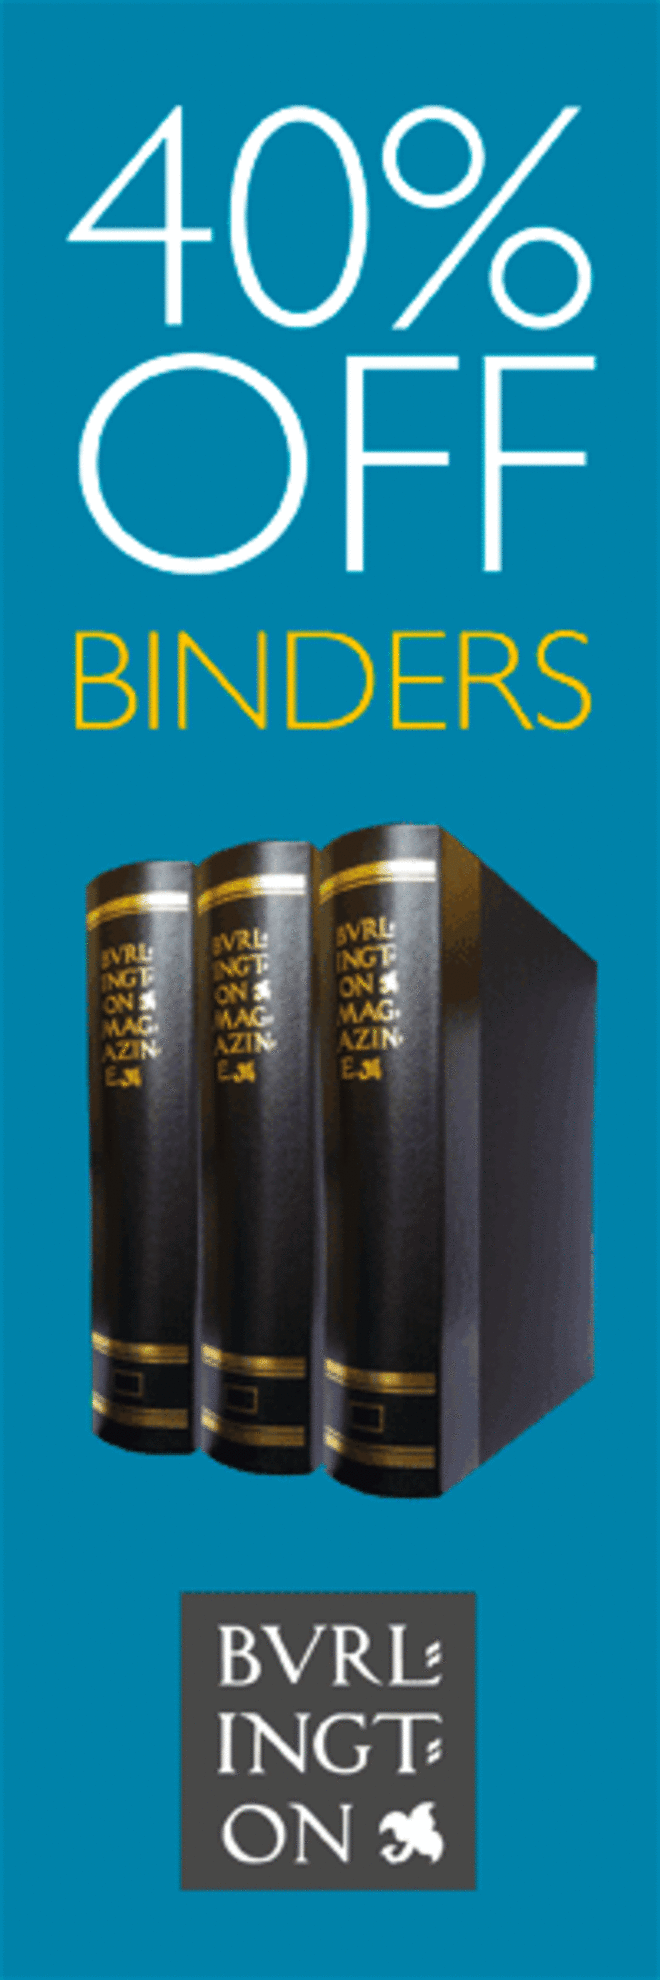 Binders 40% Off